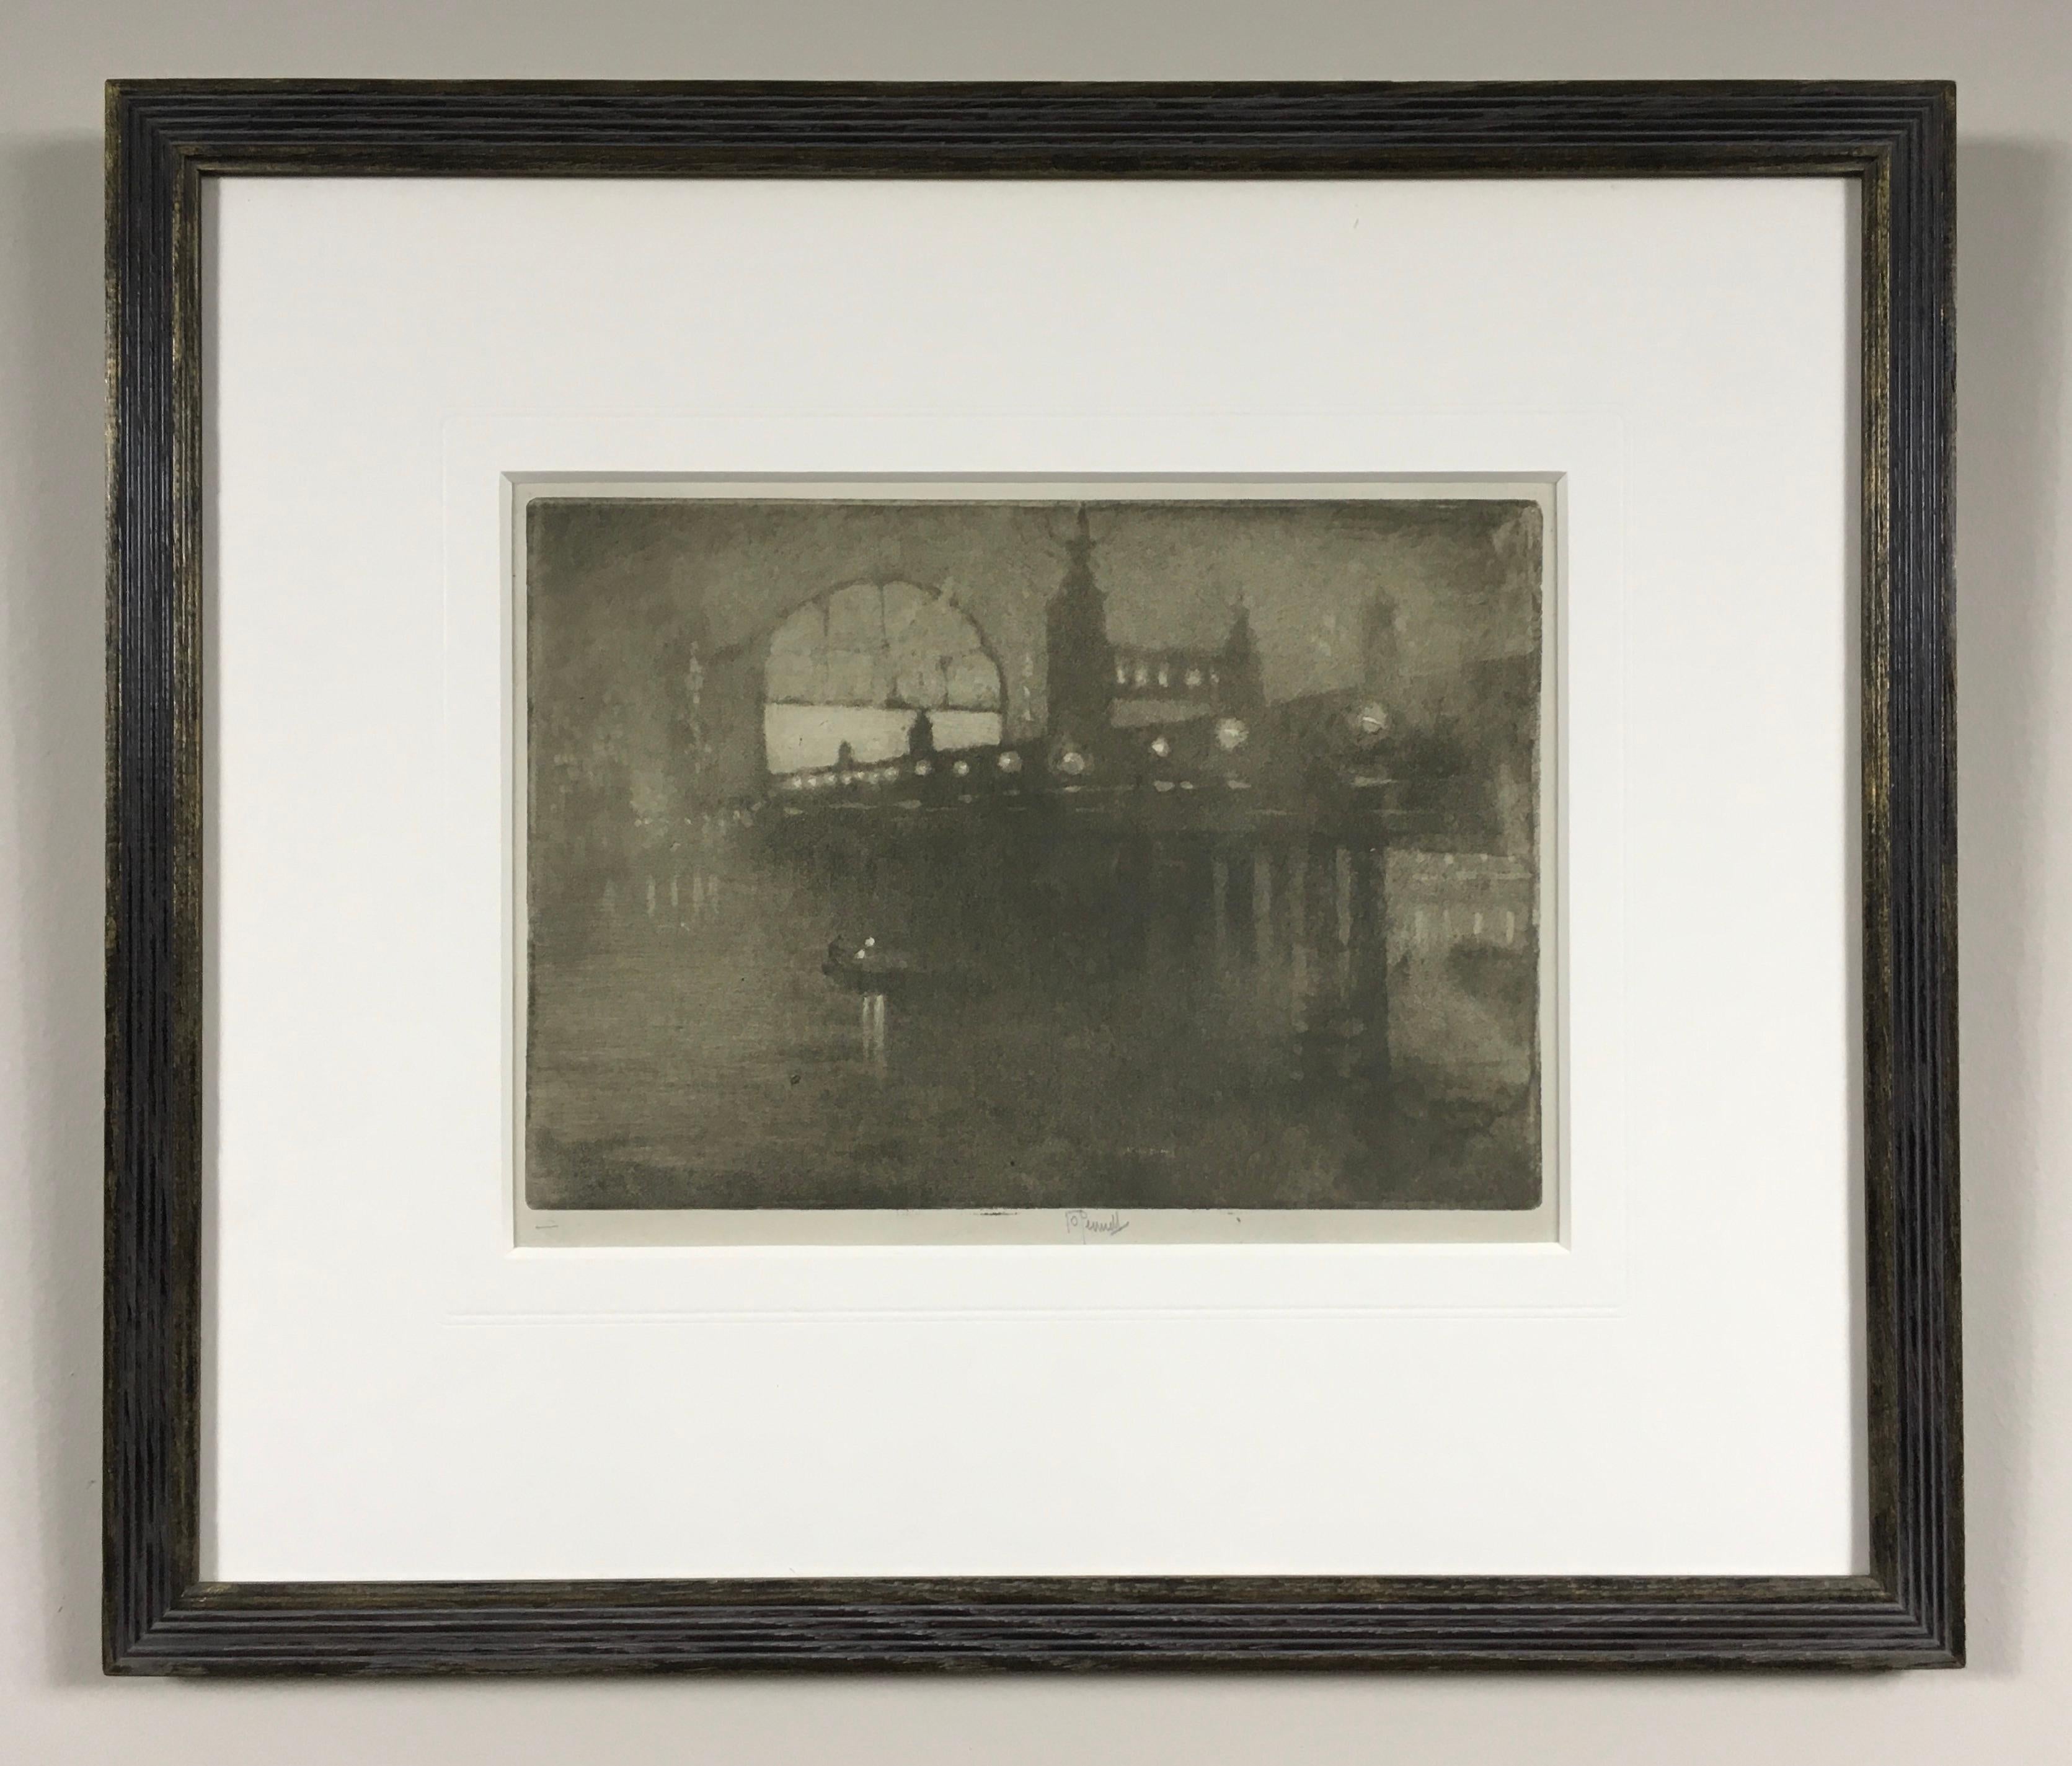 Charing Cross Bridge - eau-forte de Joseph Pennell de 1909 représentant Londres